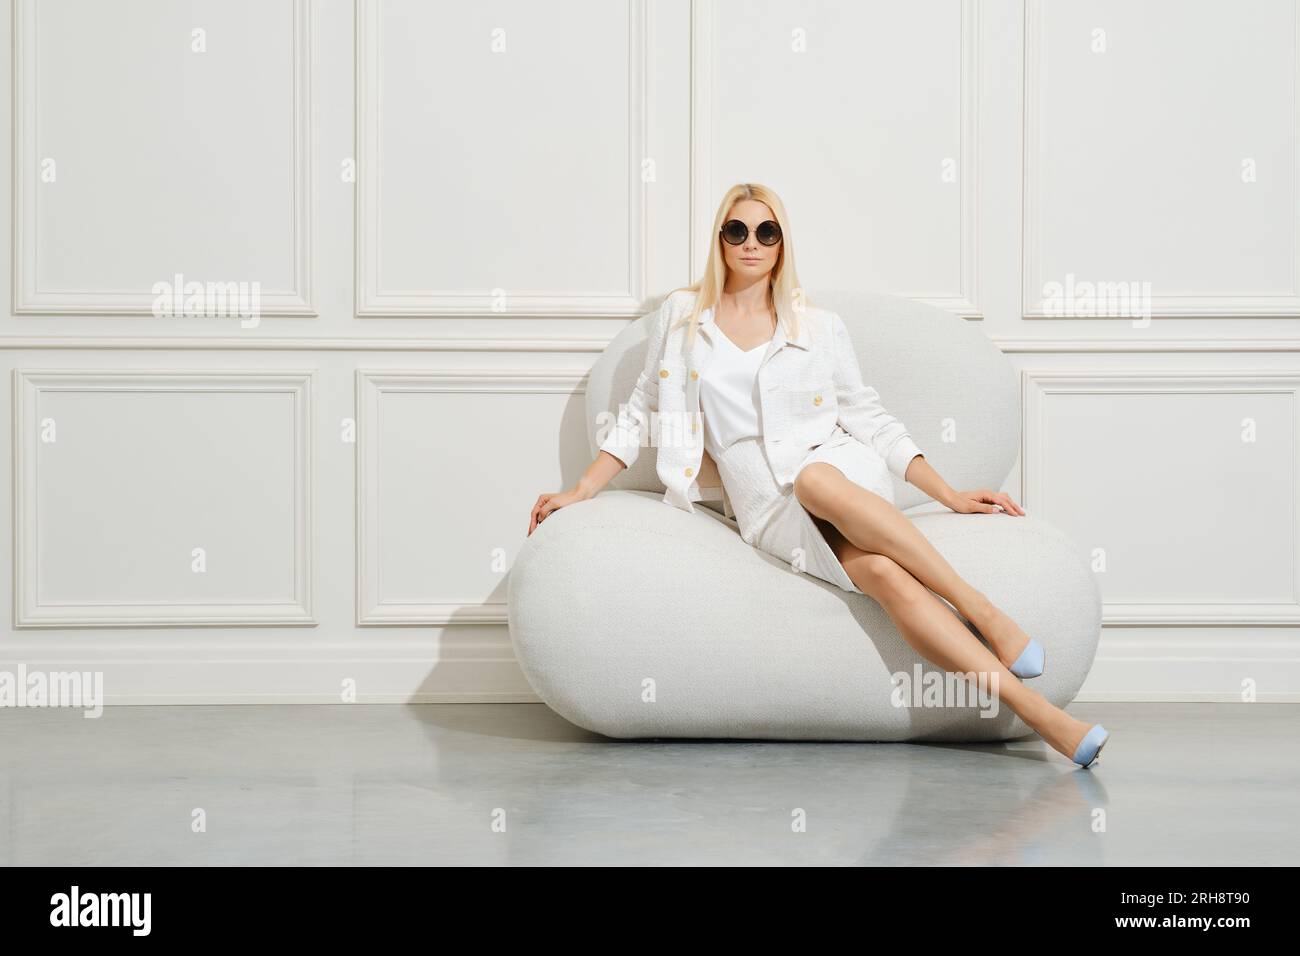 Donna sicura di sé, con giacca bianca e minigonna, si siede sul pouf in una stanza luminosa Foto Stock